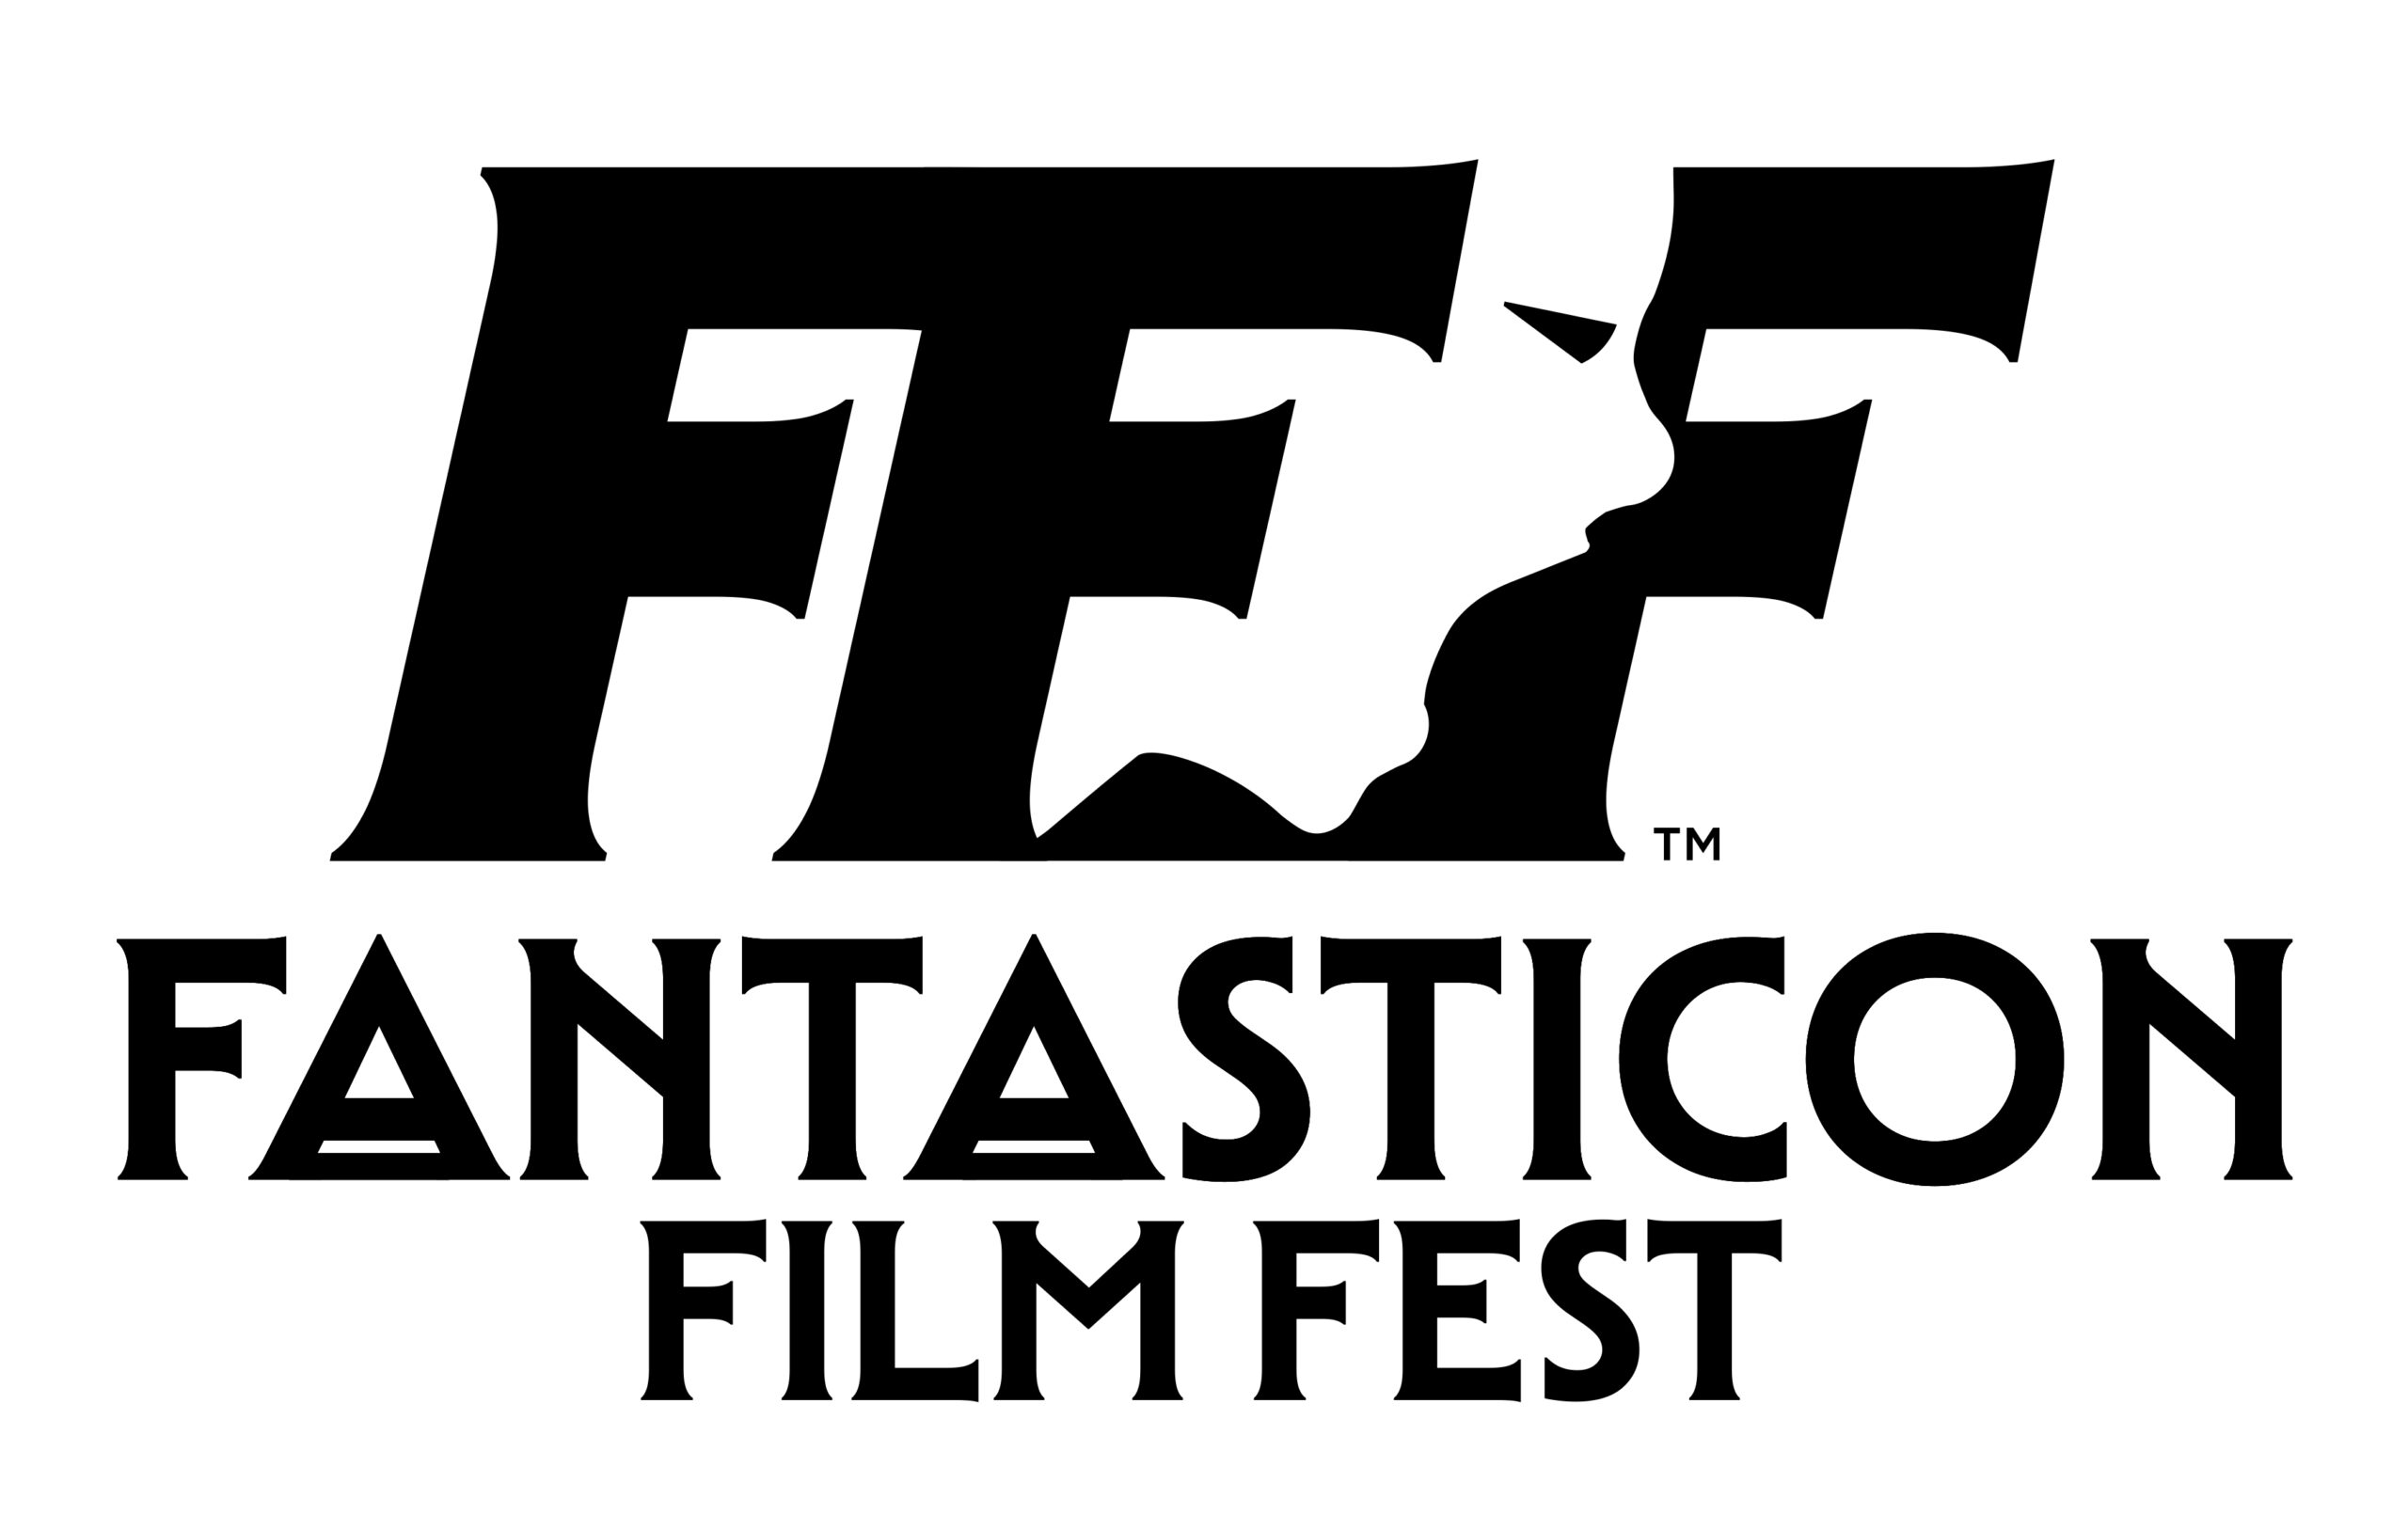 Fantasticon Film Fest al via dal 24 novembre a Fiera Milano Rho